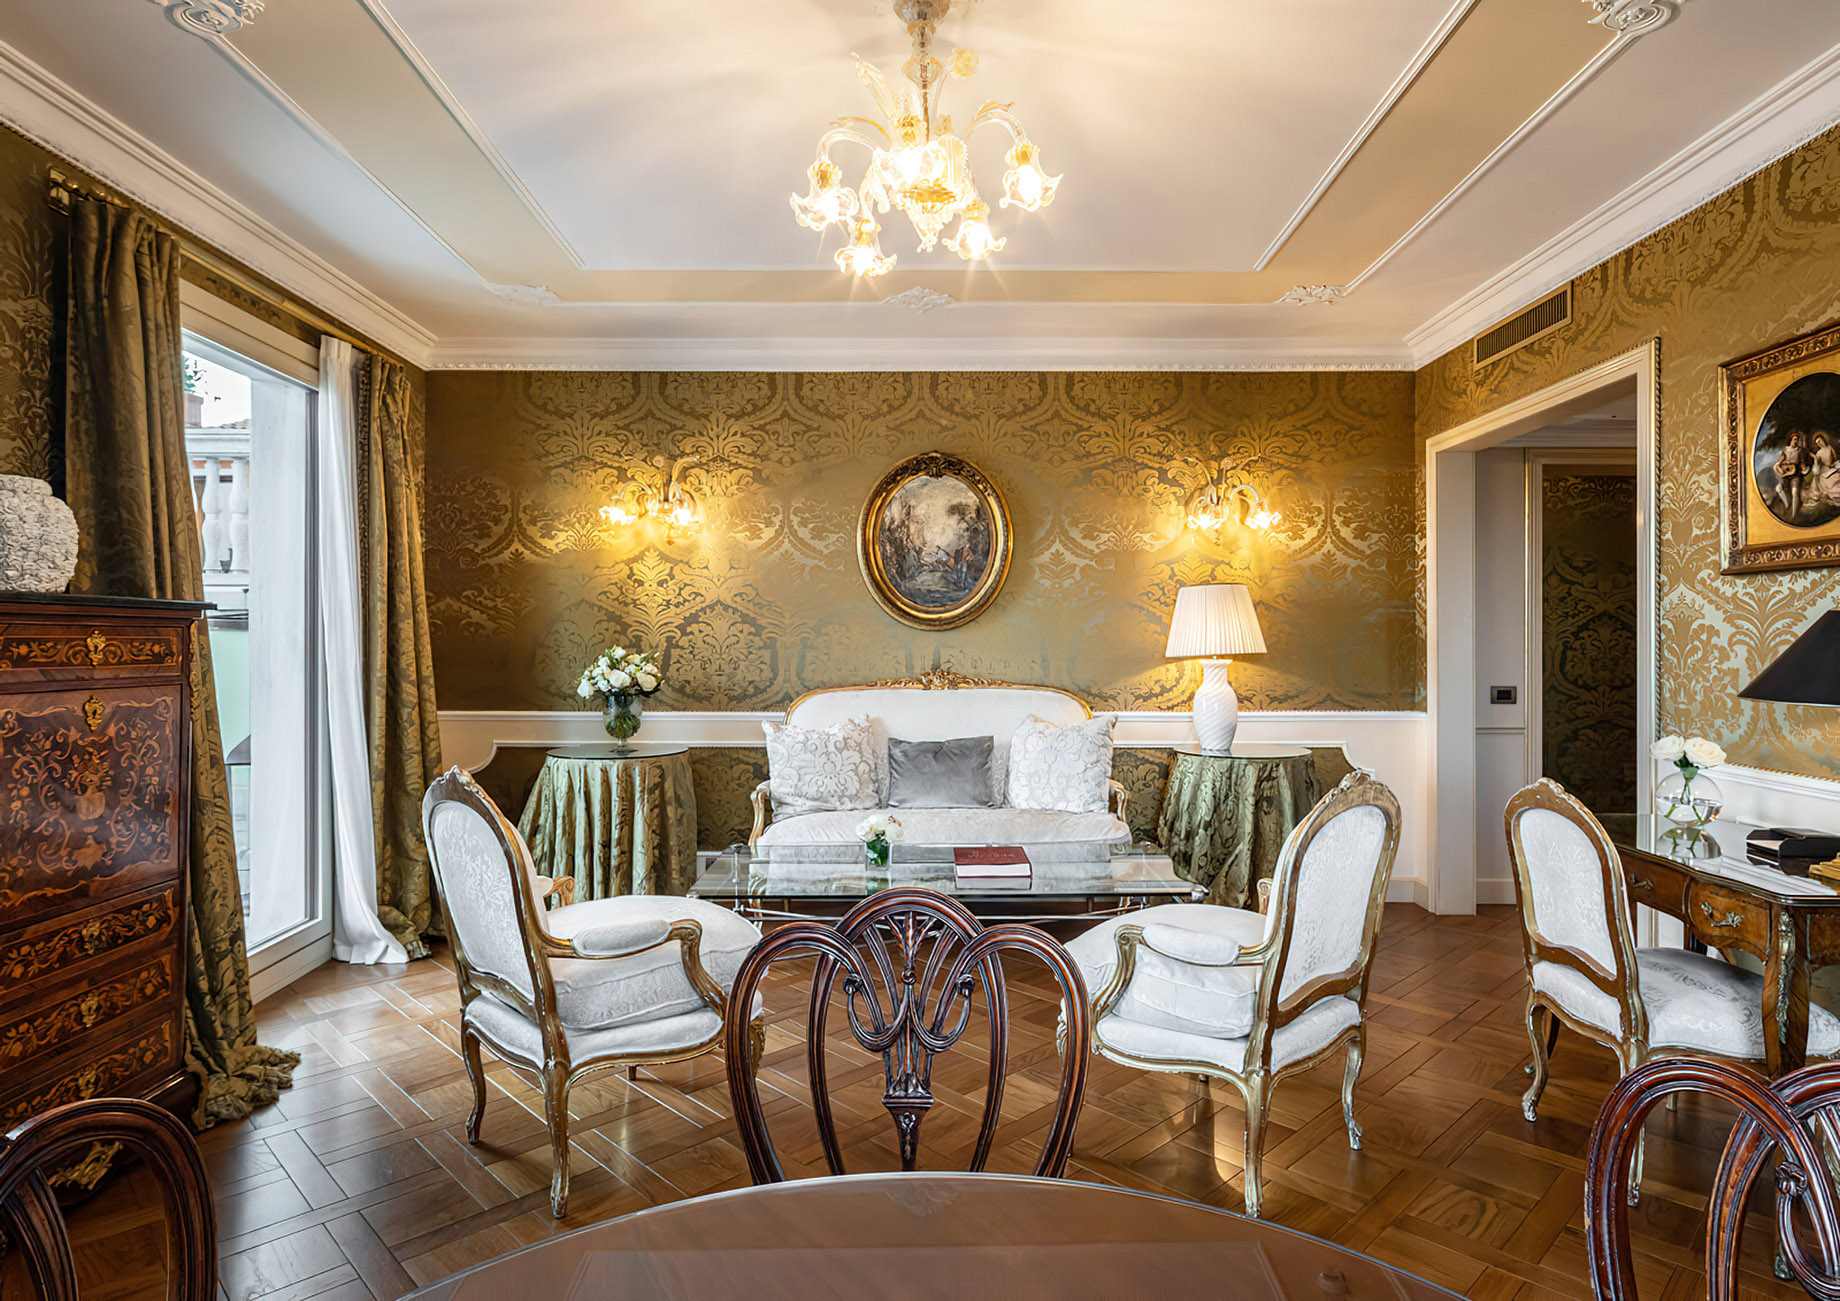 Baglioni Hotel Luna, Venezia - Venice, Italy - Sansovino Family Lagoon View Suite Bedroom